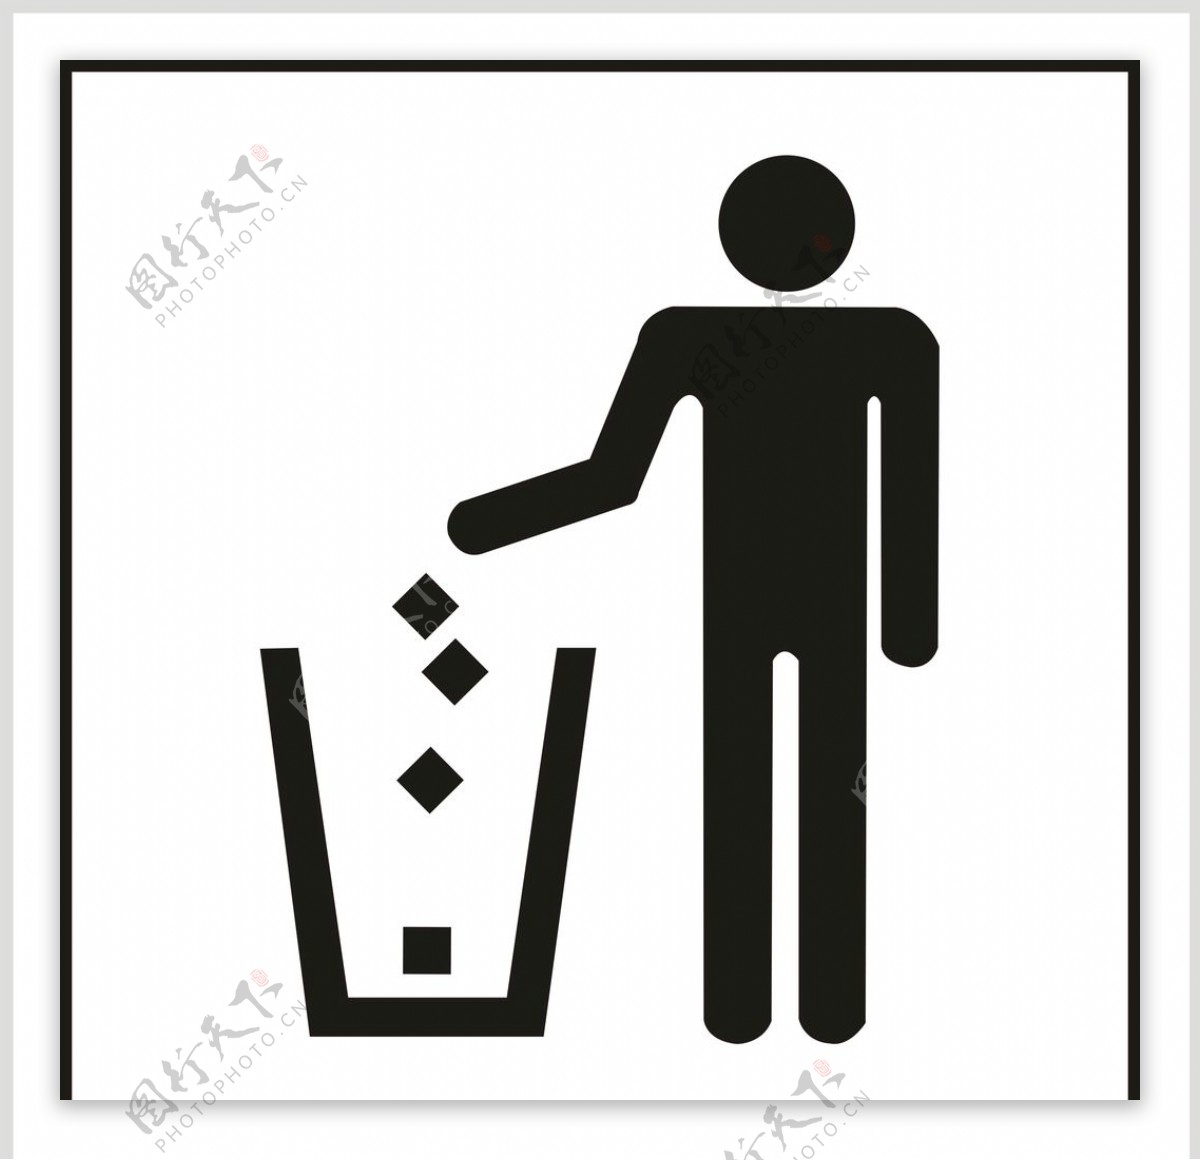 垃圾桶标志